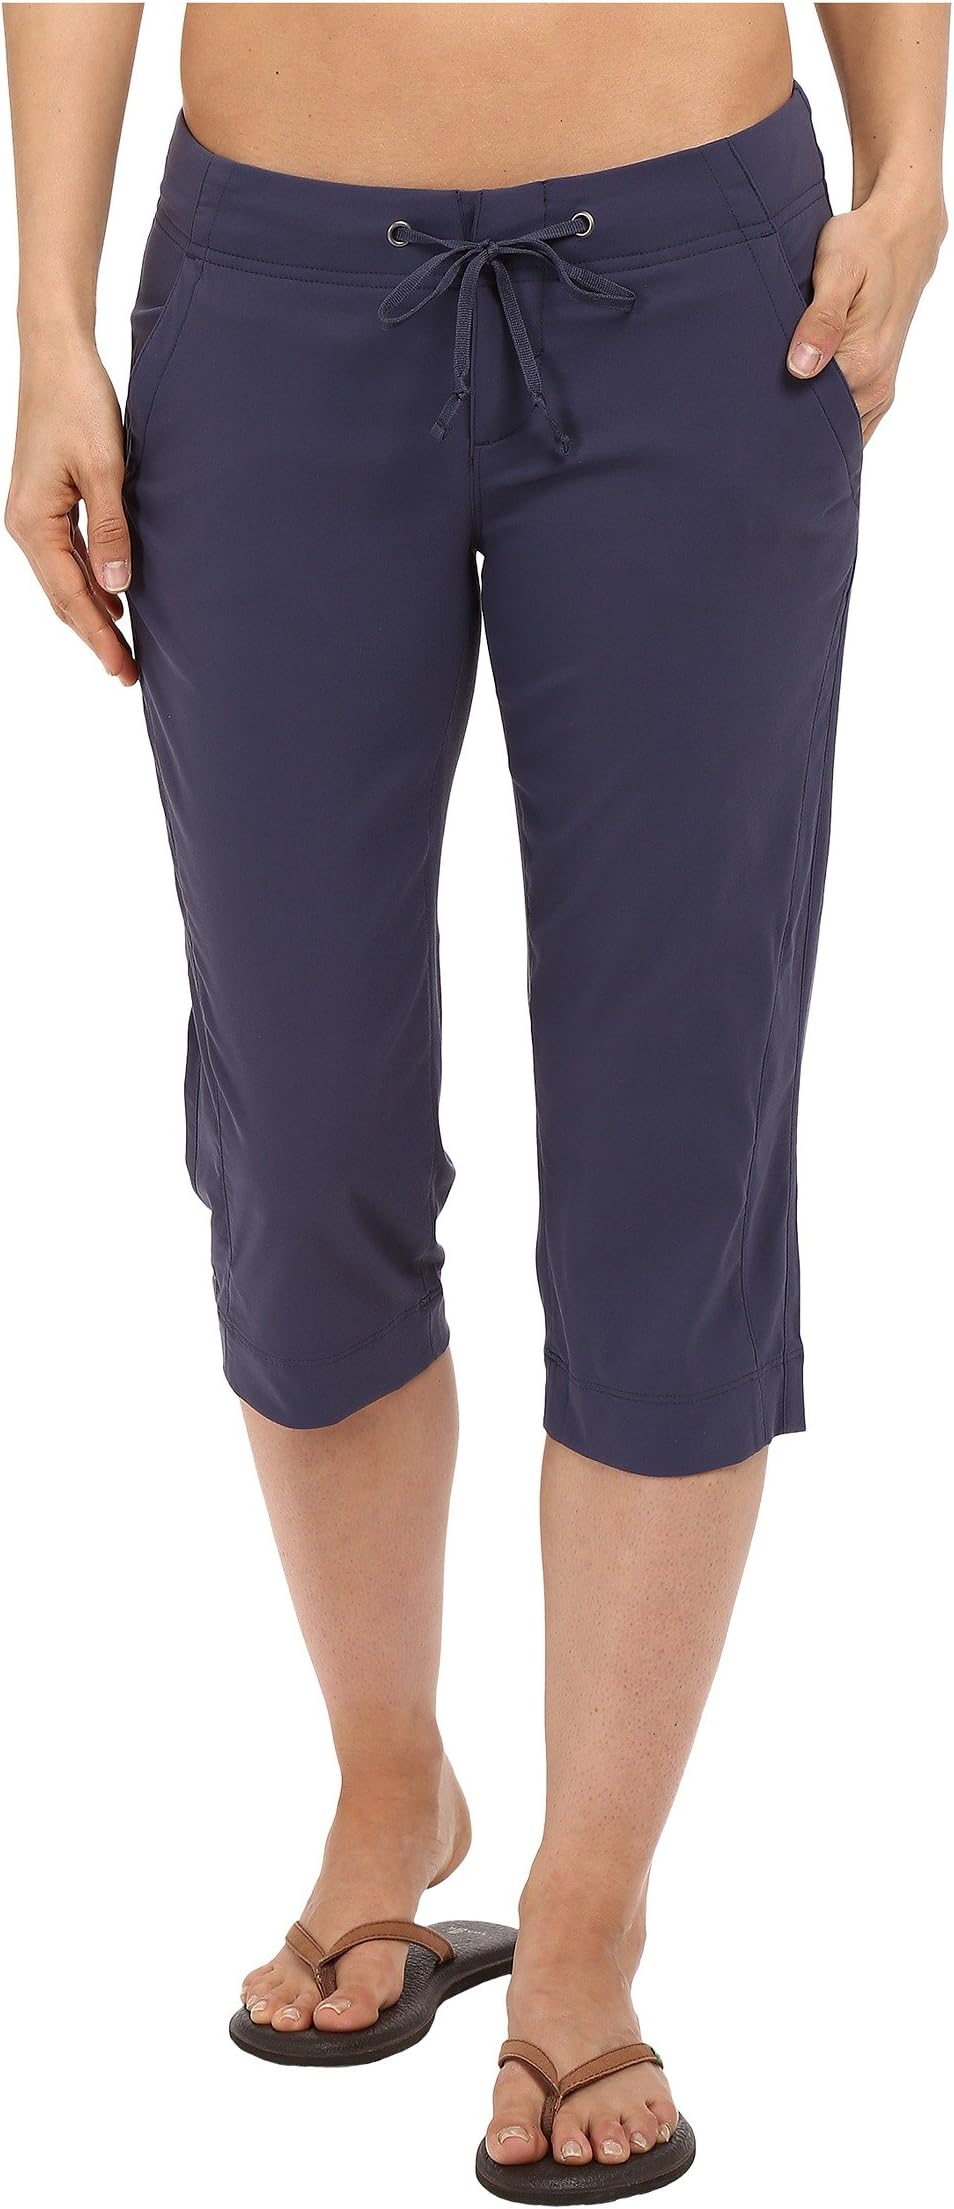 Брюки Anytime Outdoor Capri Columbia, цвет Nocturnal columbia брюки женские columbia anytime outdoor размер 40 42